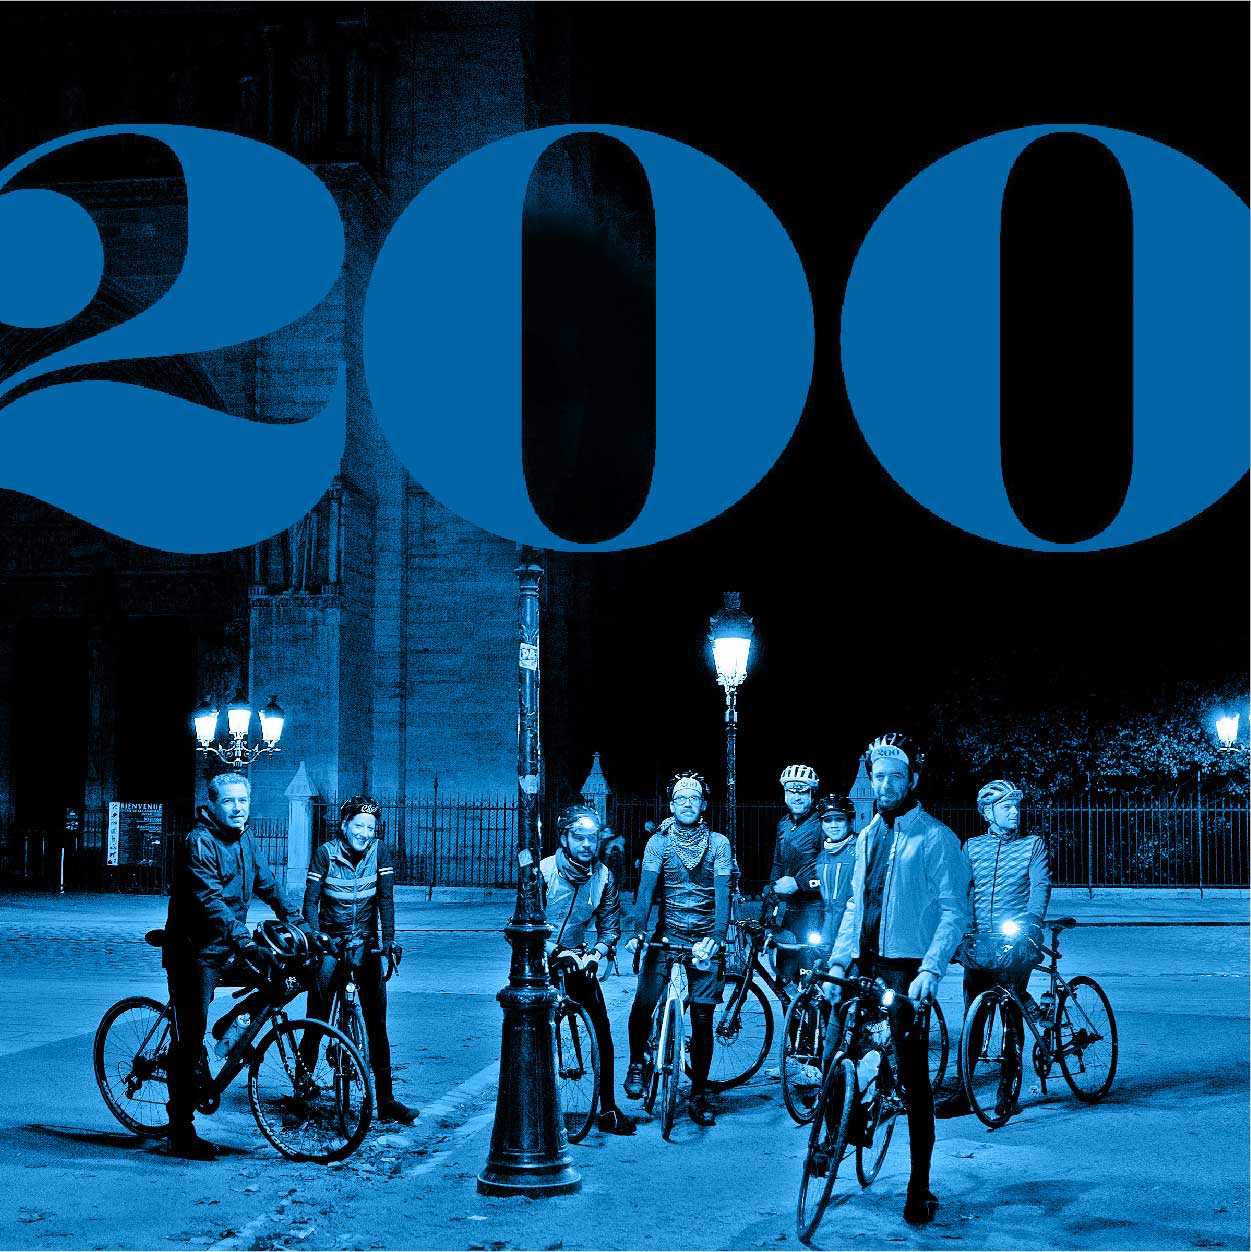 200 magazine Autour de Paris 217km